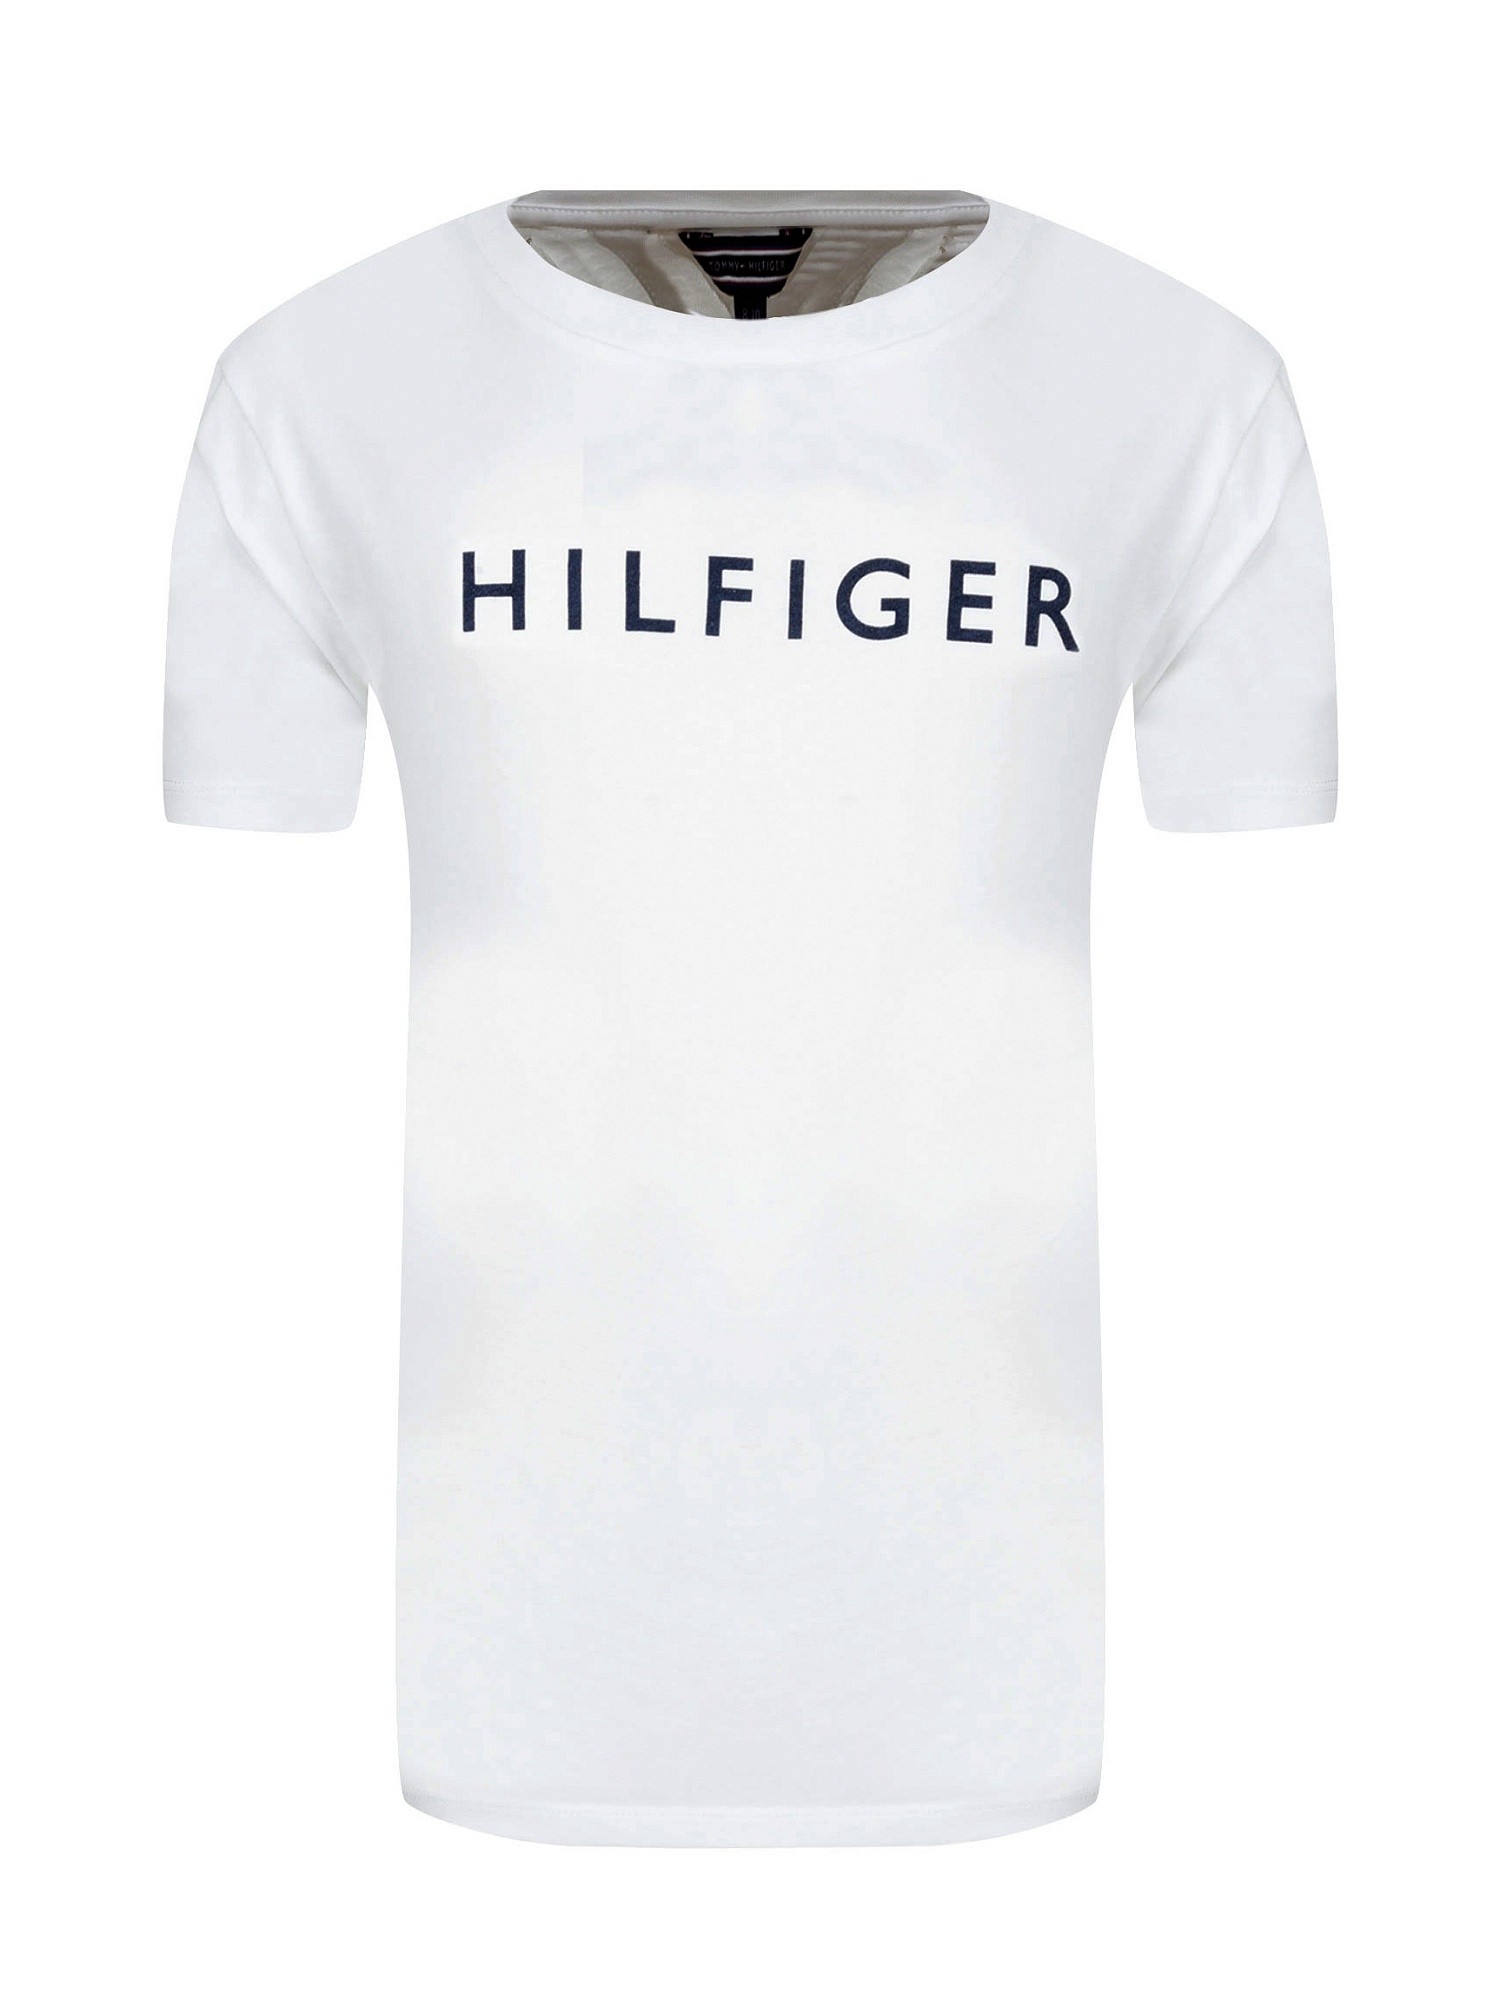 Белая футболка Tommy Hilfiger 105 UB0UB00128 105 - купить с доставкой по Москве, России, оплата при получении